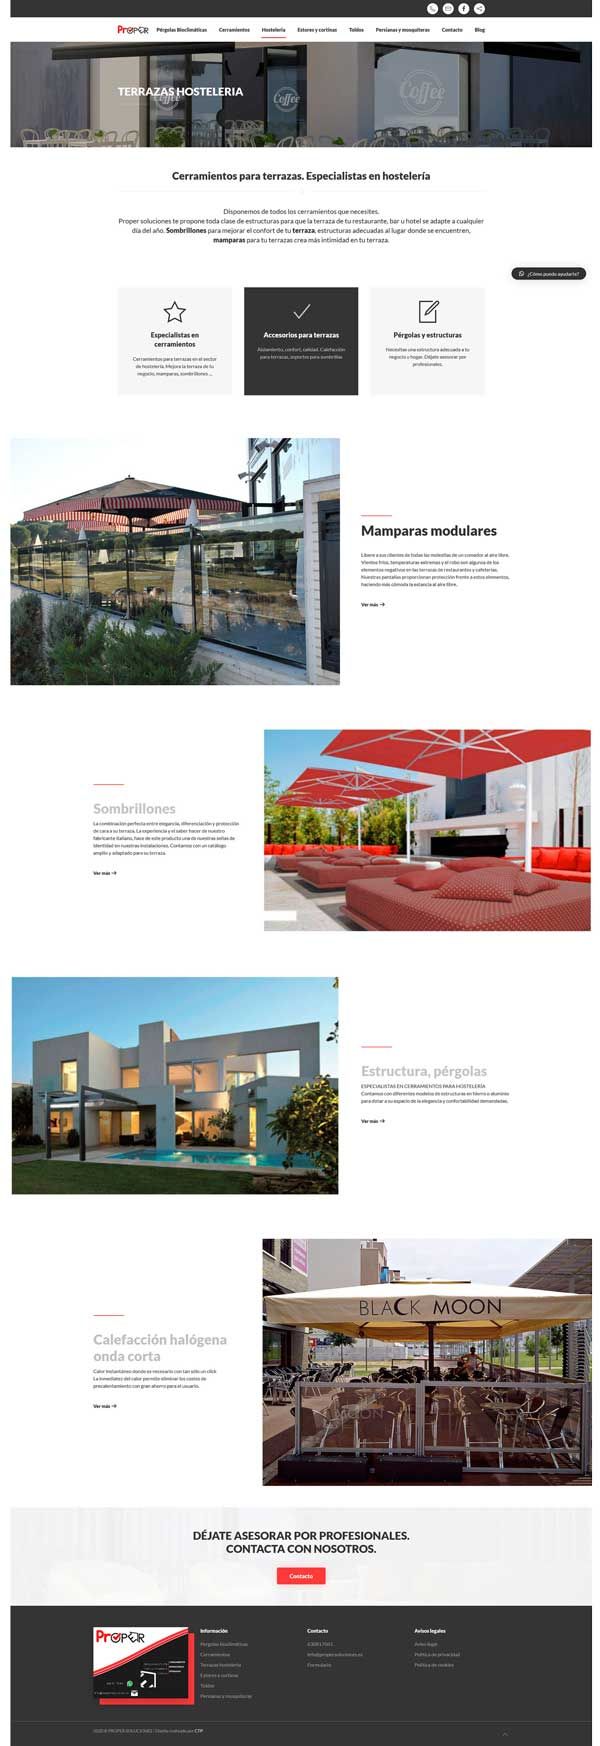 Página web de proper soluciones. Diseño web Valladolid. Servicios.